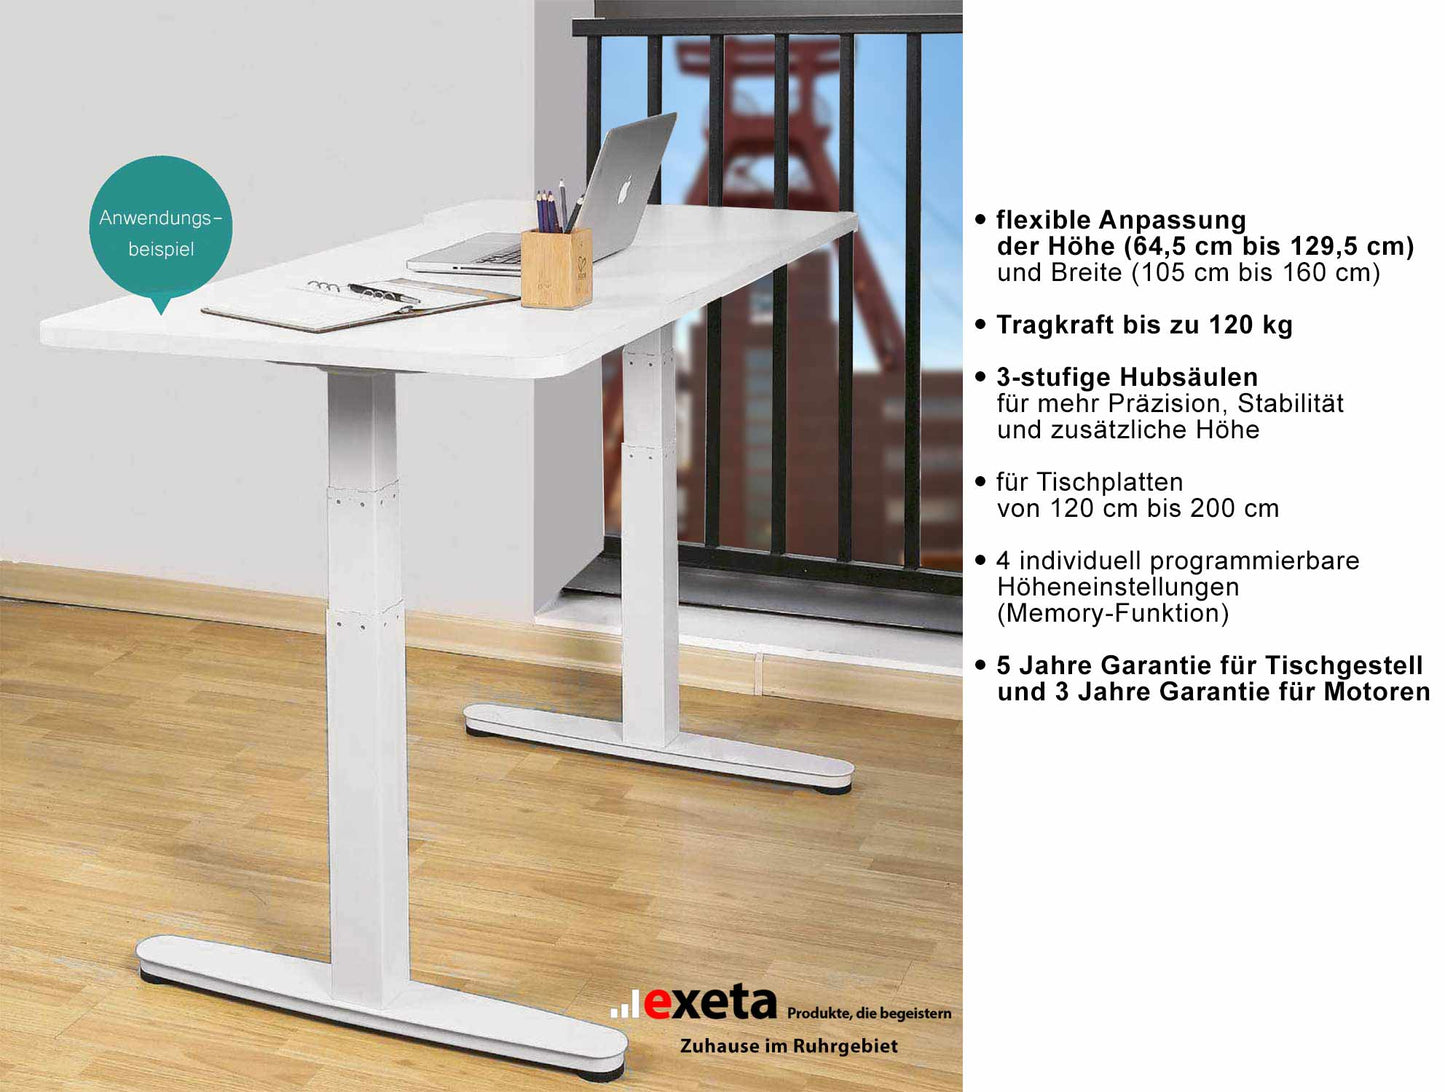 Spar-Bundle ergoSMART weiss + Tischplatte weiss 150x75x2,5cm